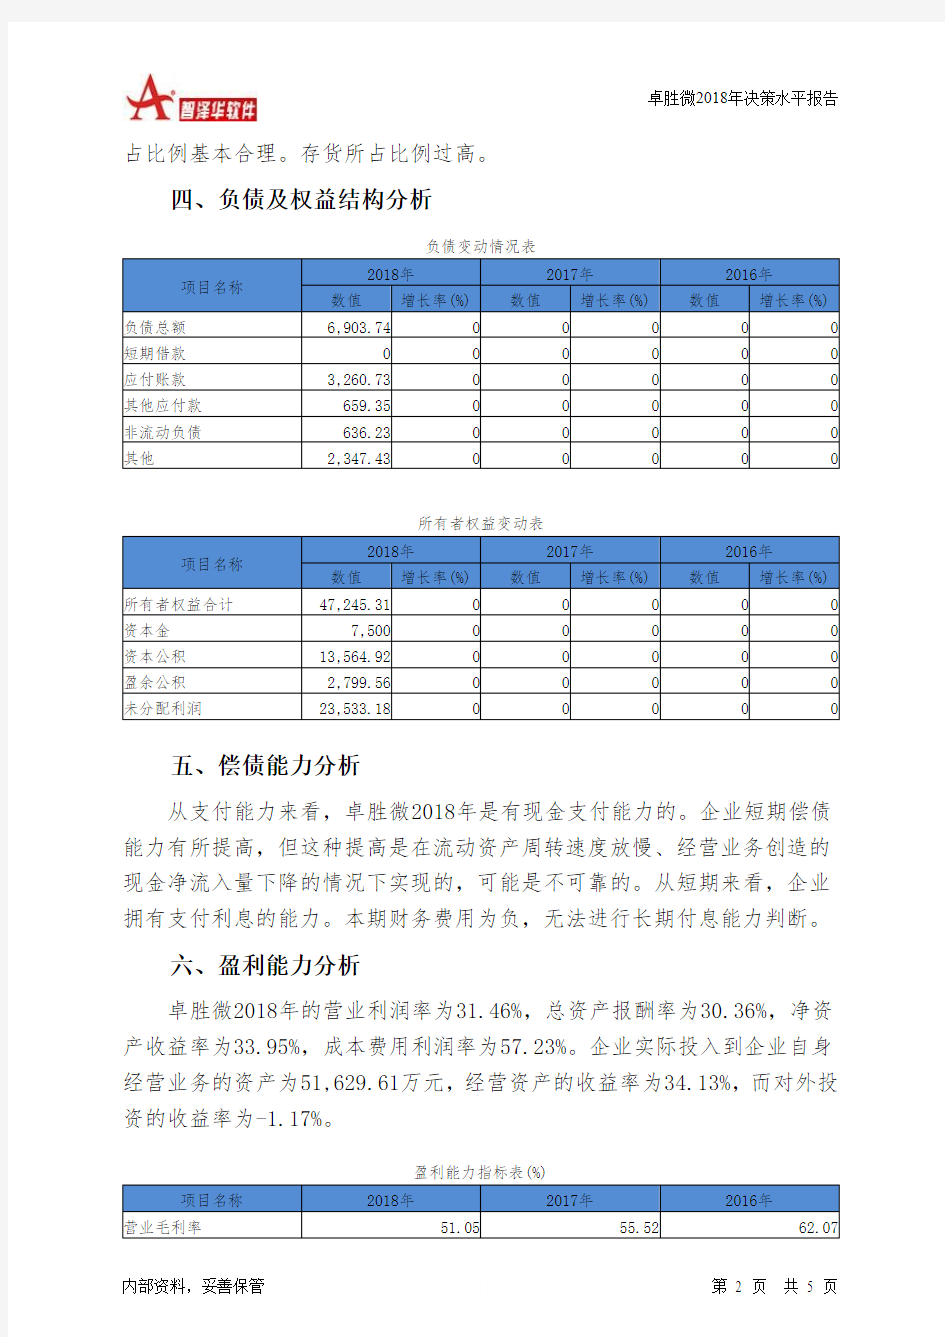 卓胜微2018年决策水平分析报告-智泽华